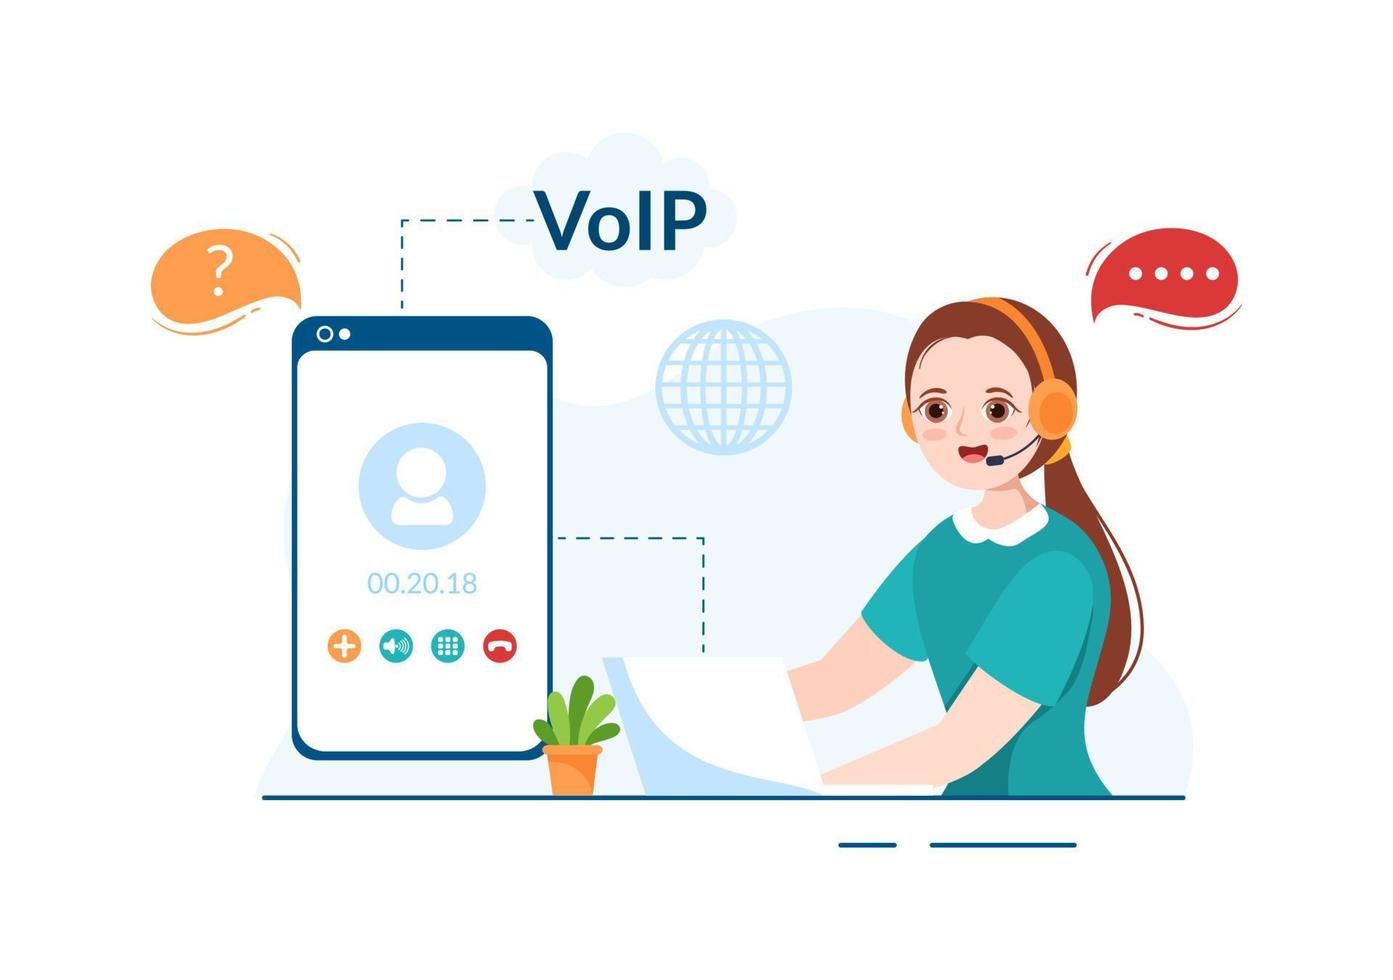 voip o protocolo de voz sobre internet con tecnología de esquema de telefonía y software de llamadas telefónicas de red en plantilla ilustración plana de dibujos animados dibujados a mano vector